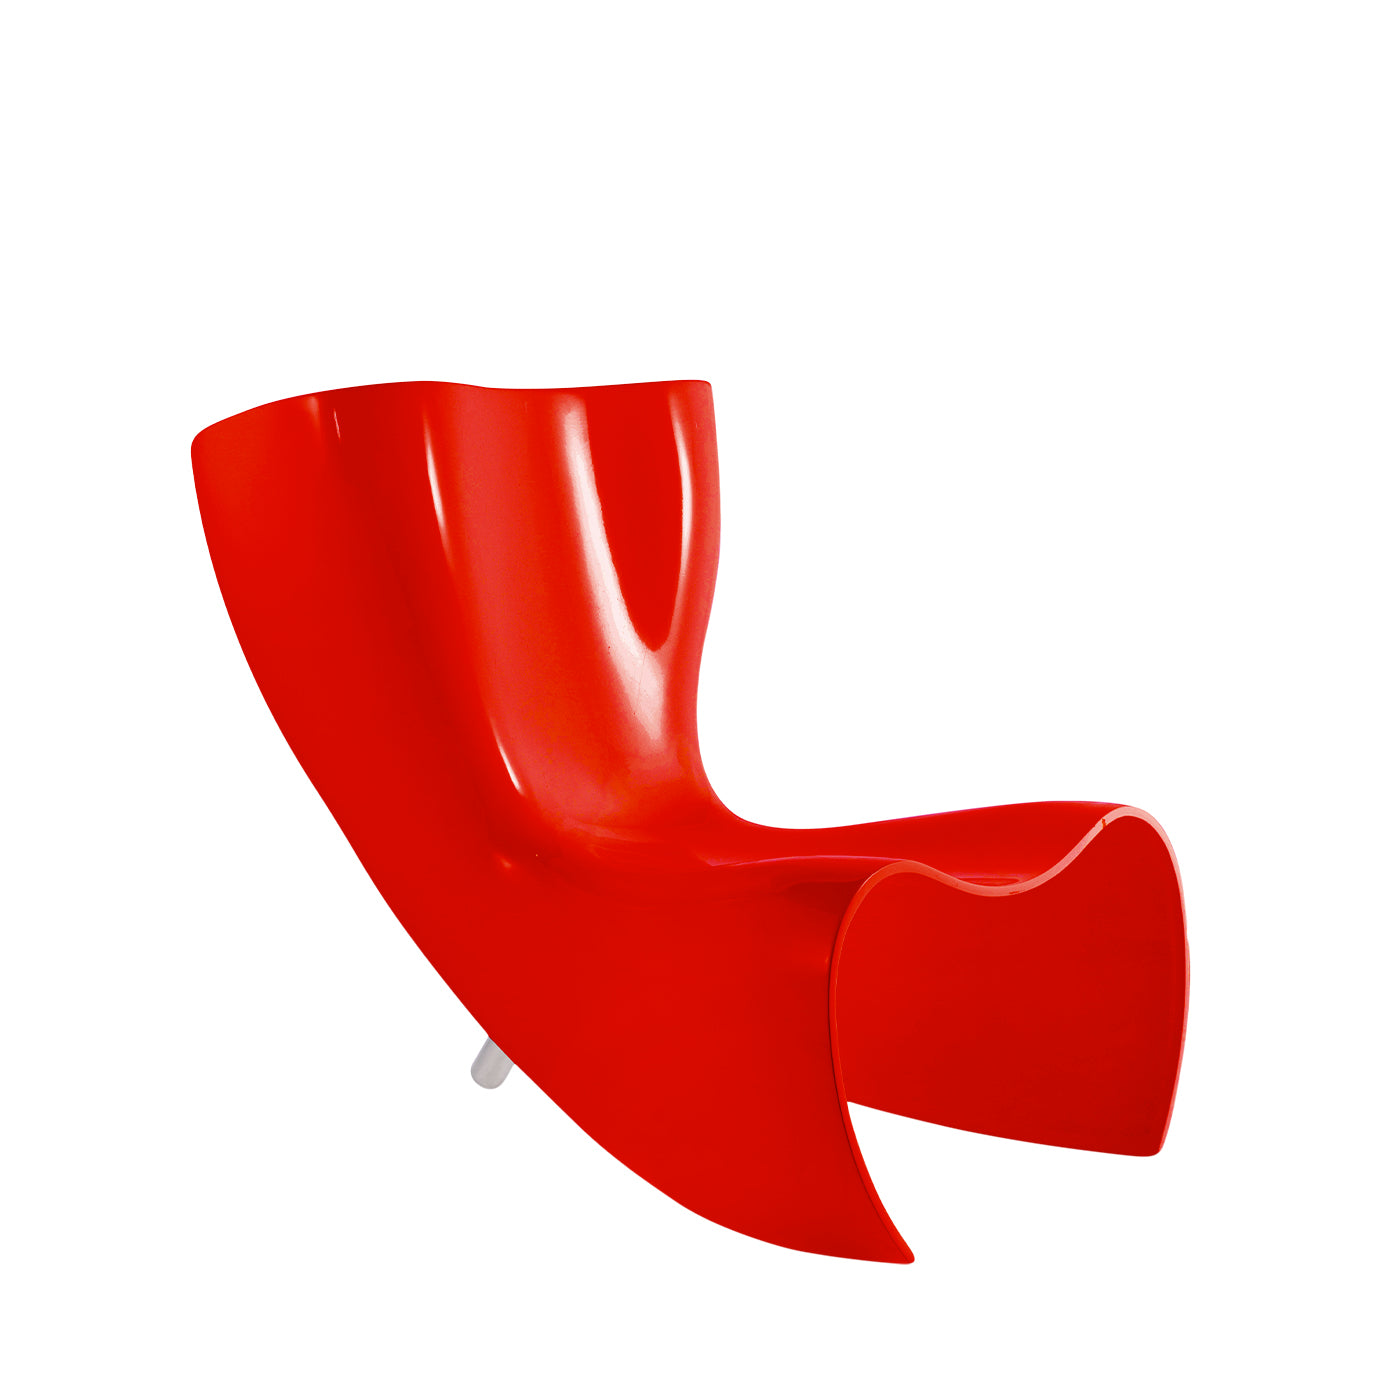 Felt Chair by Marc Newson - Main view